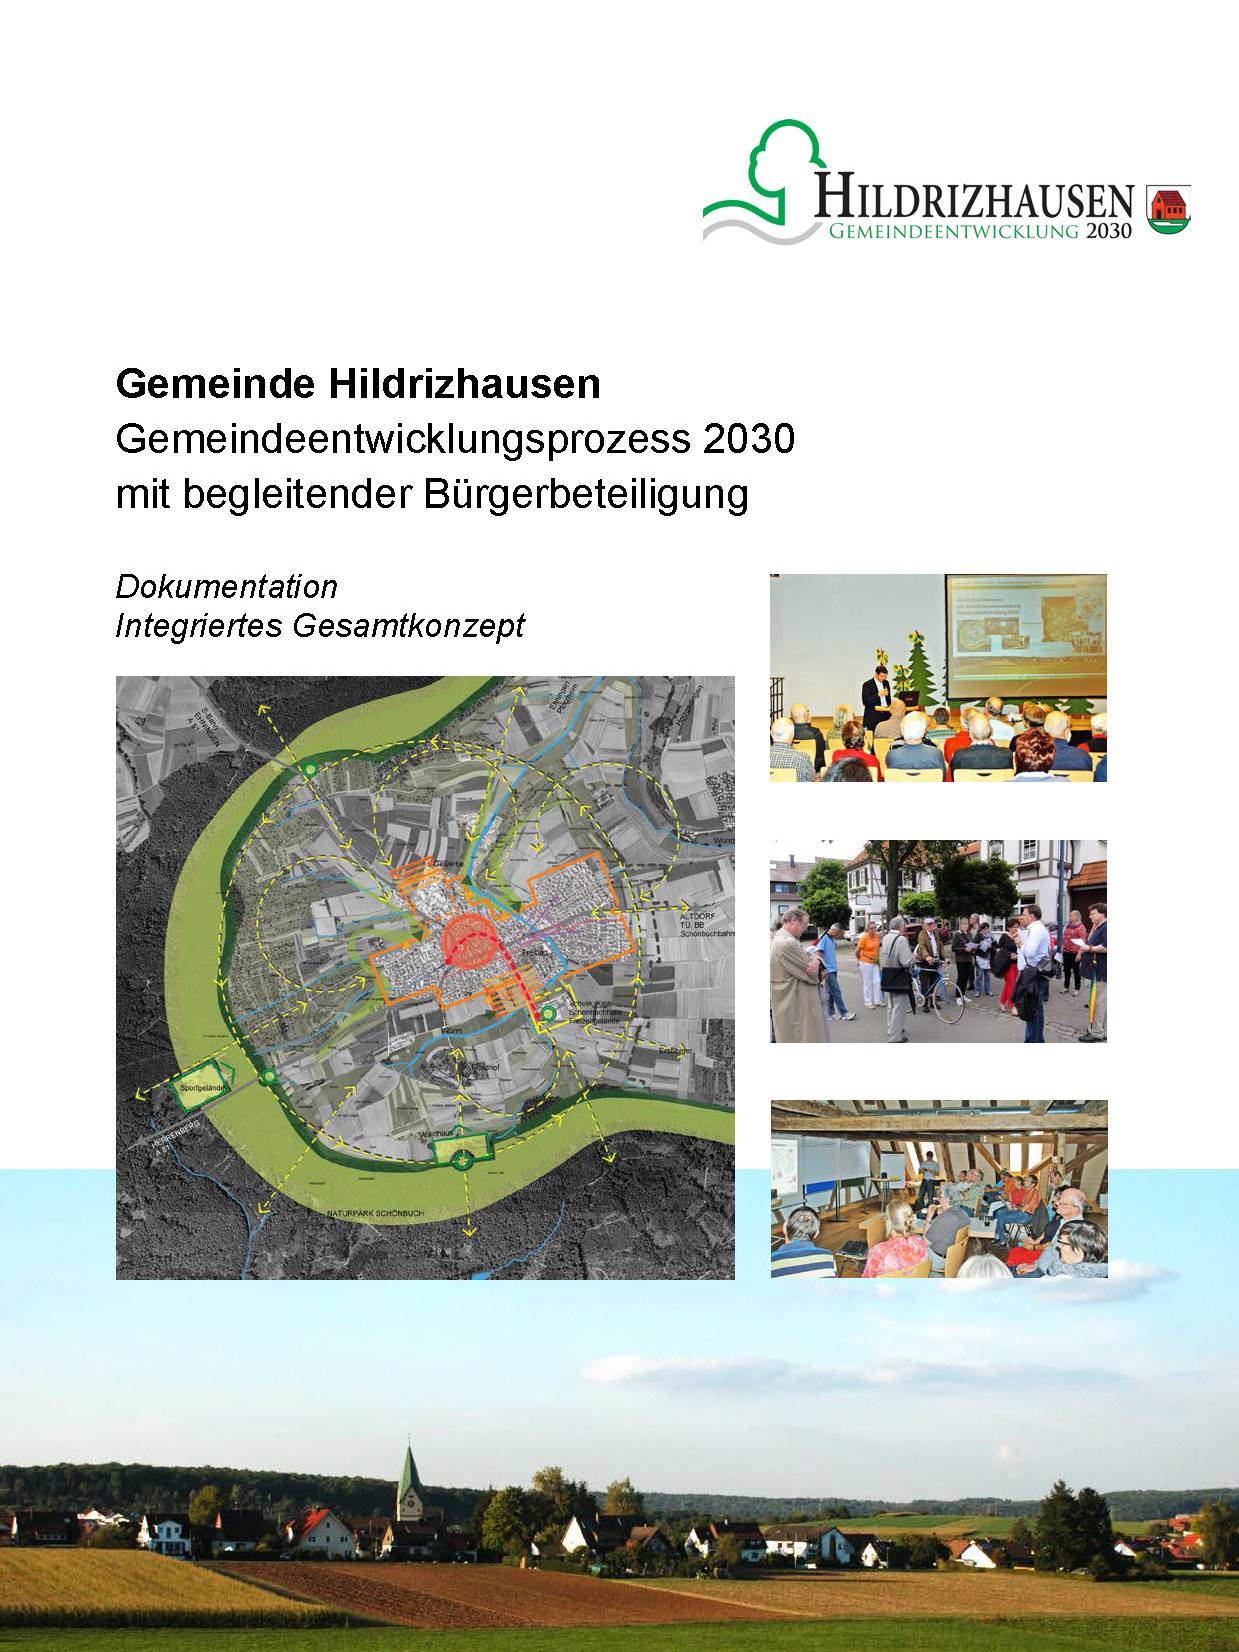  "Gemeindeentwicklung 2030" 